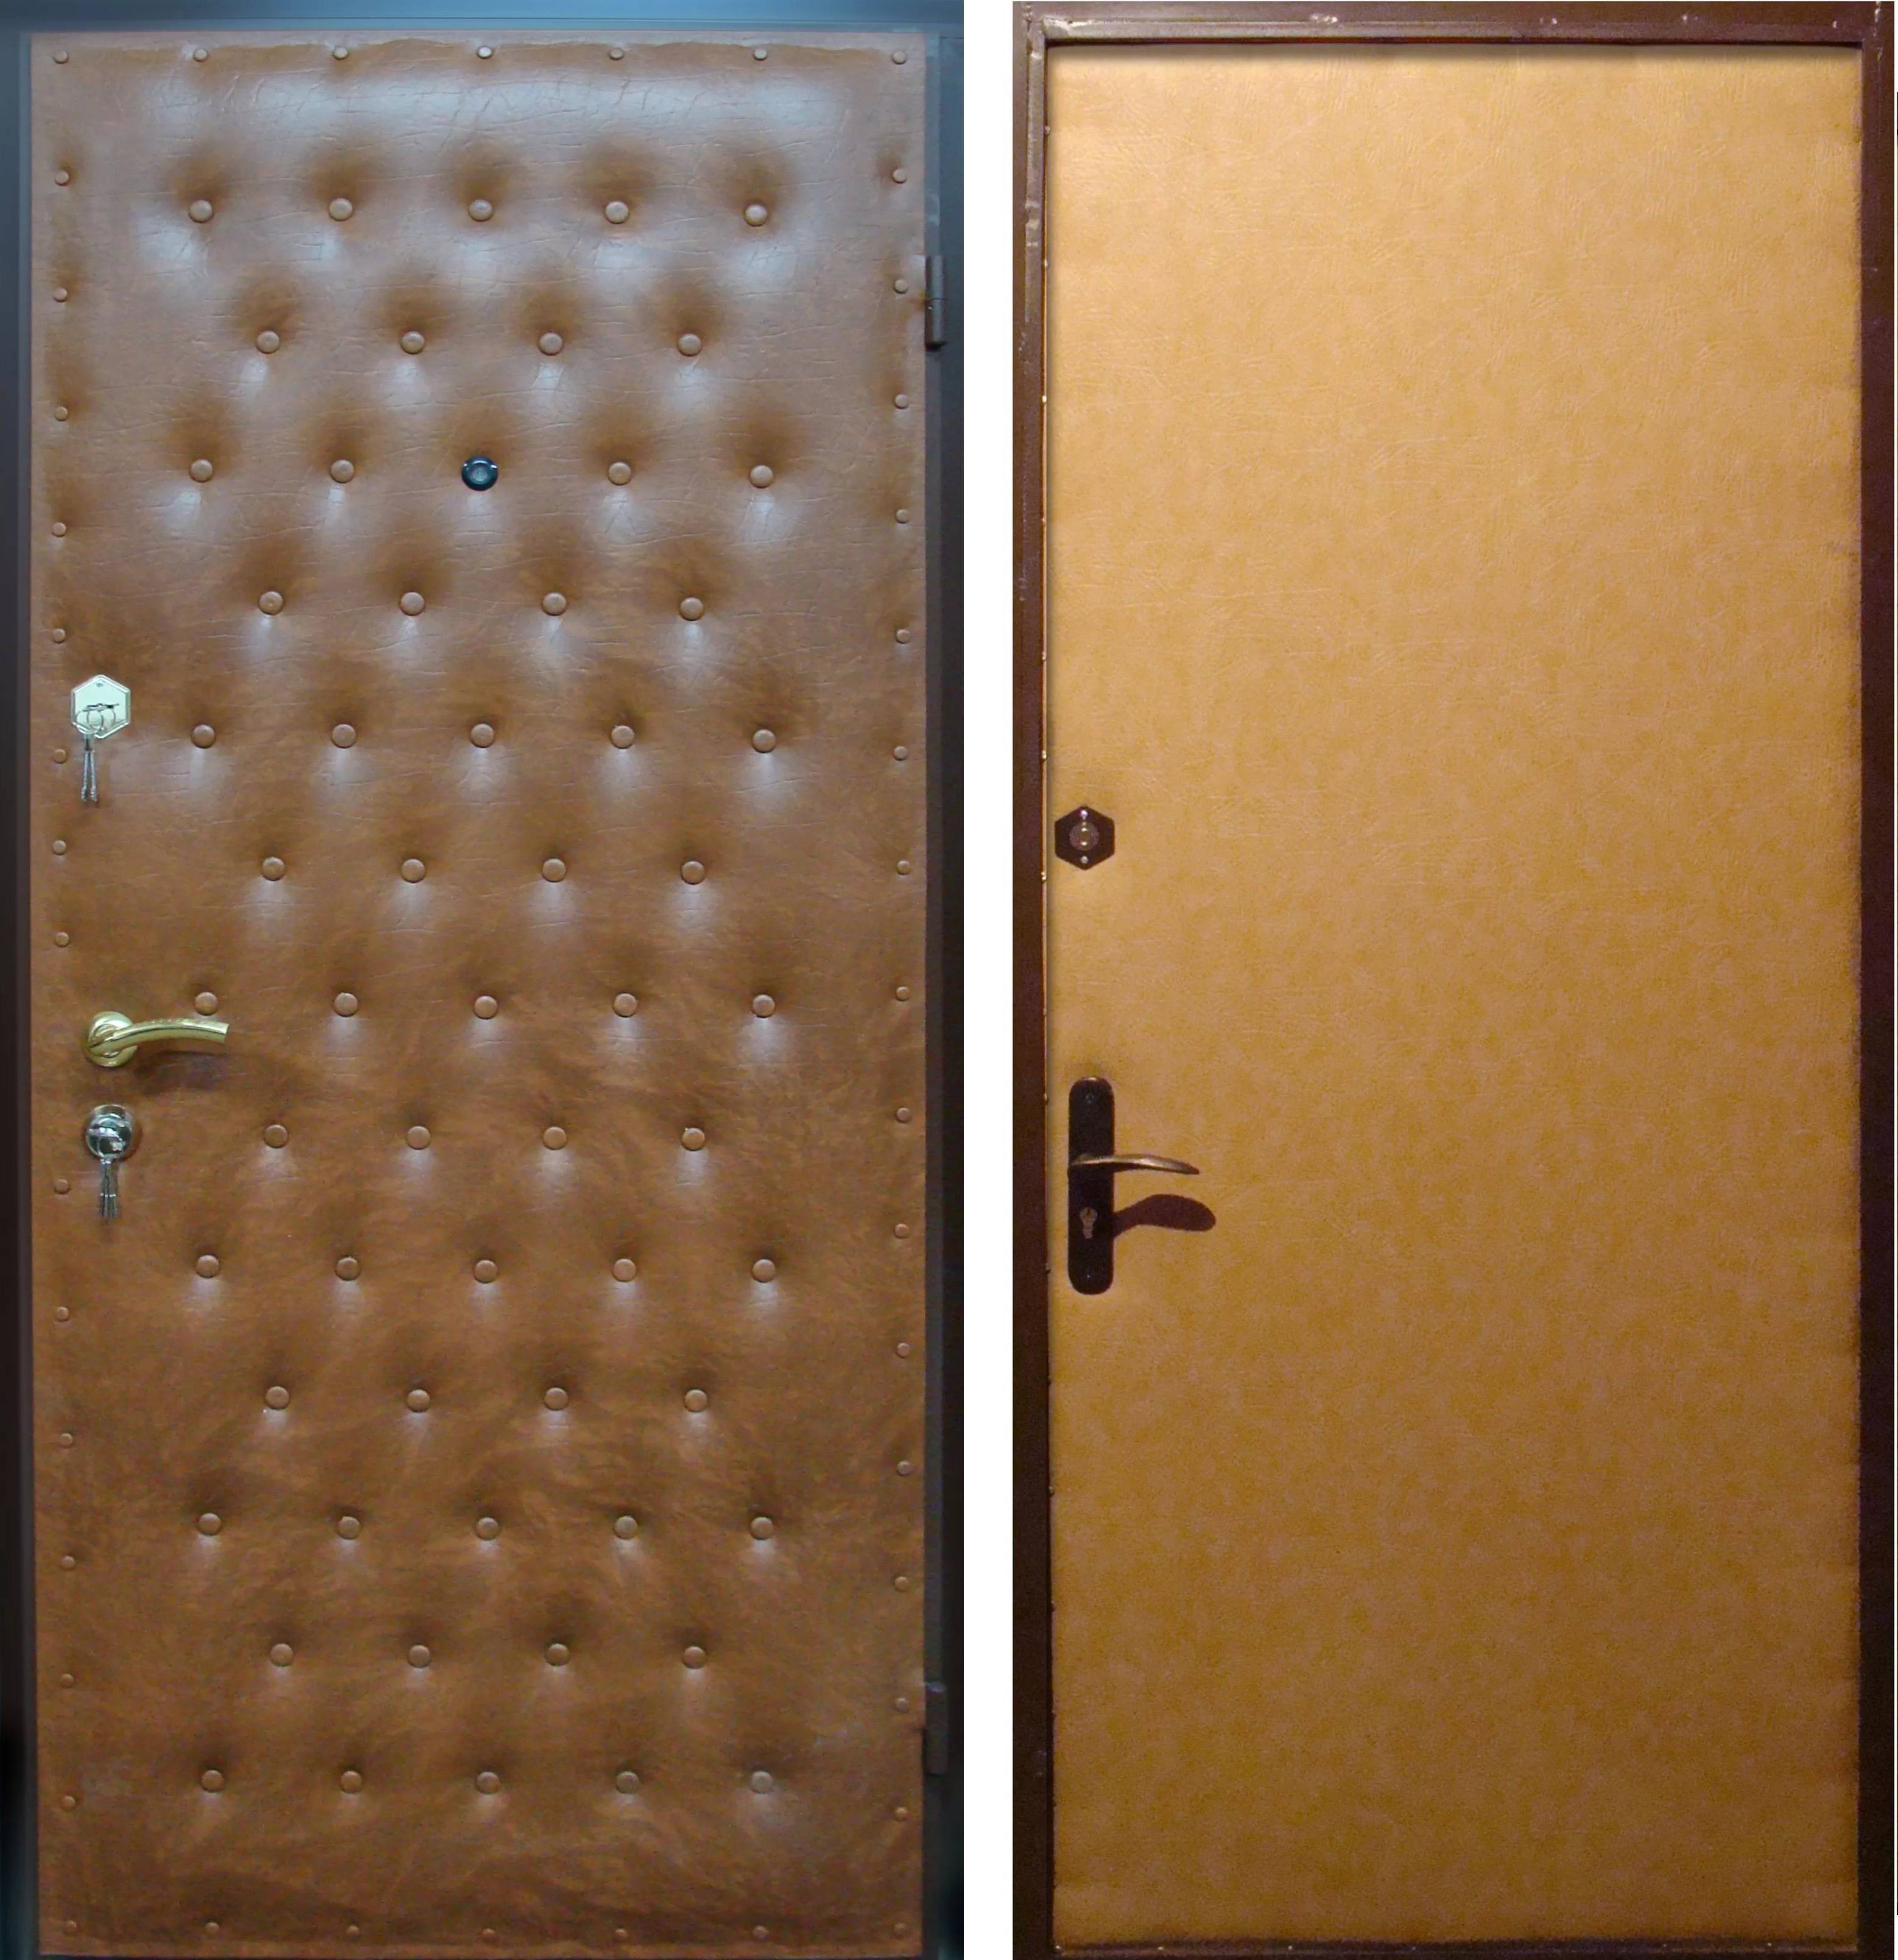 Обшивка дверей в квартире: металлических и деревянных, материалы, ремонт, как оббить с наружной и внутренней стороны, фото